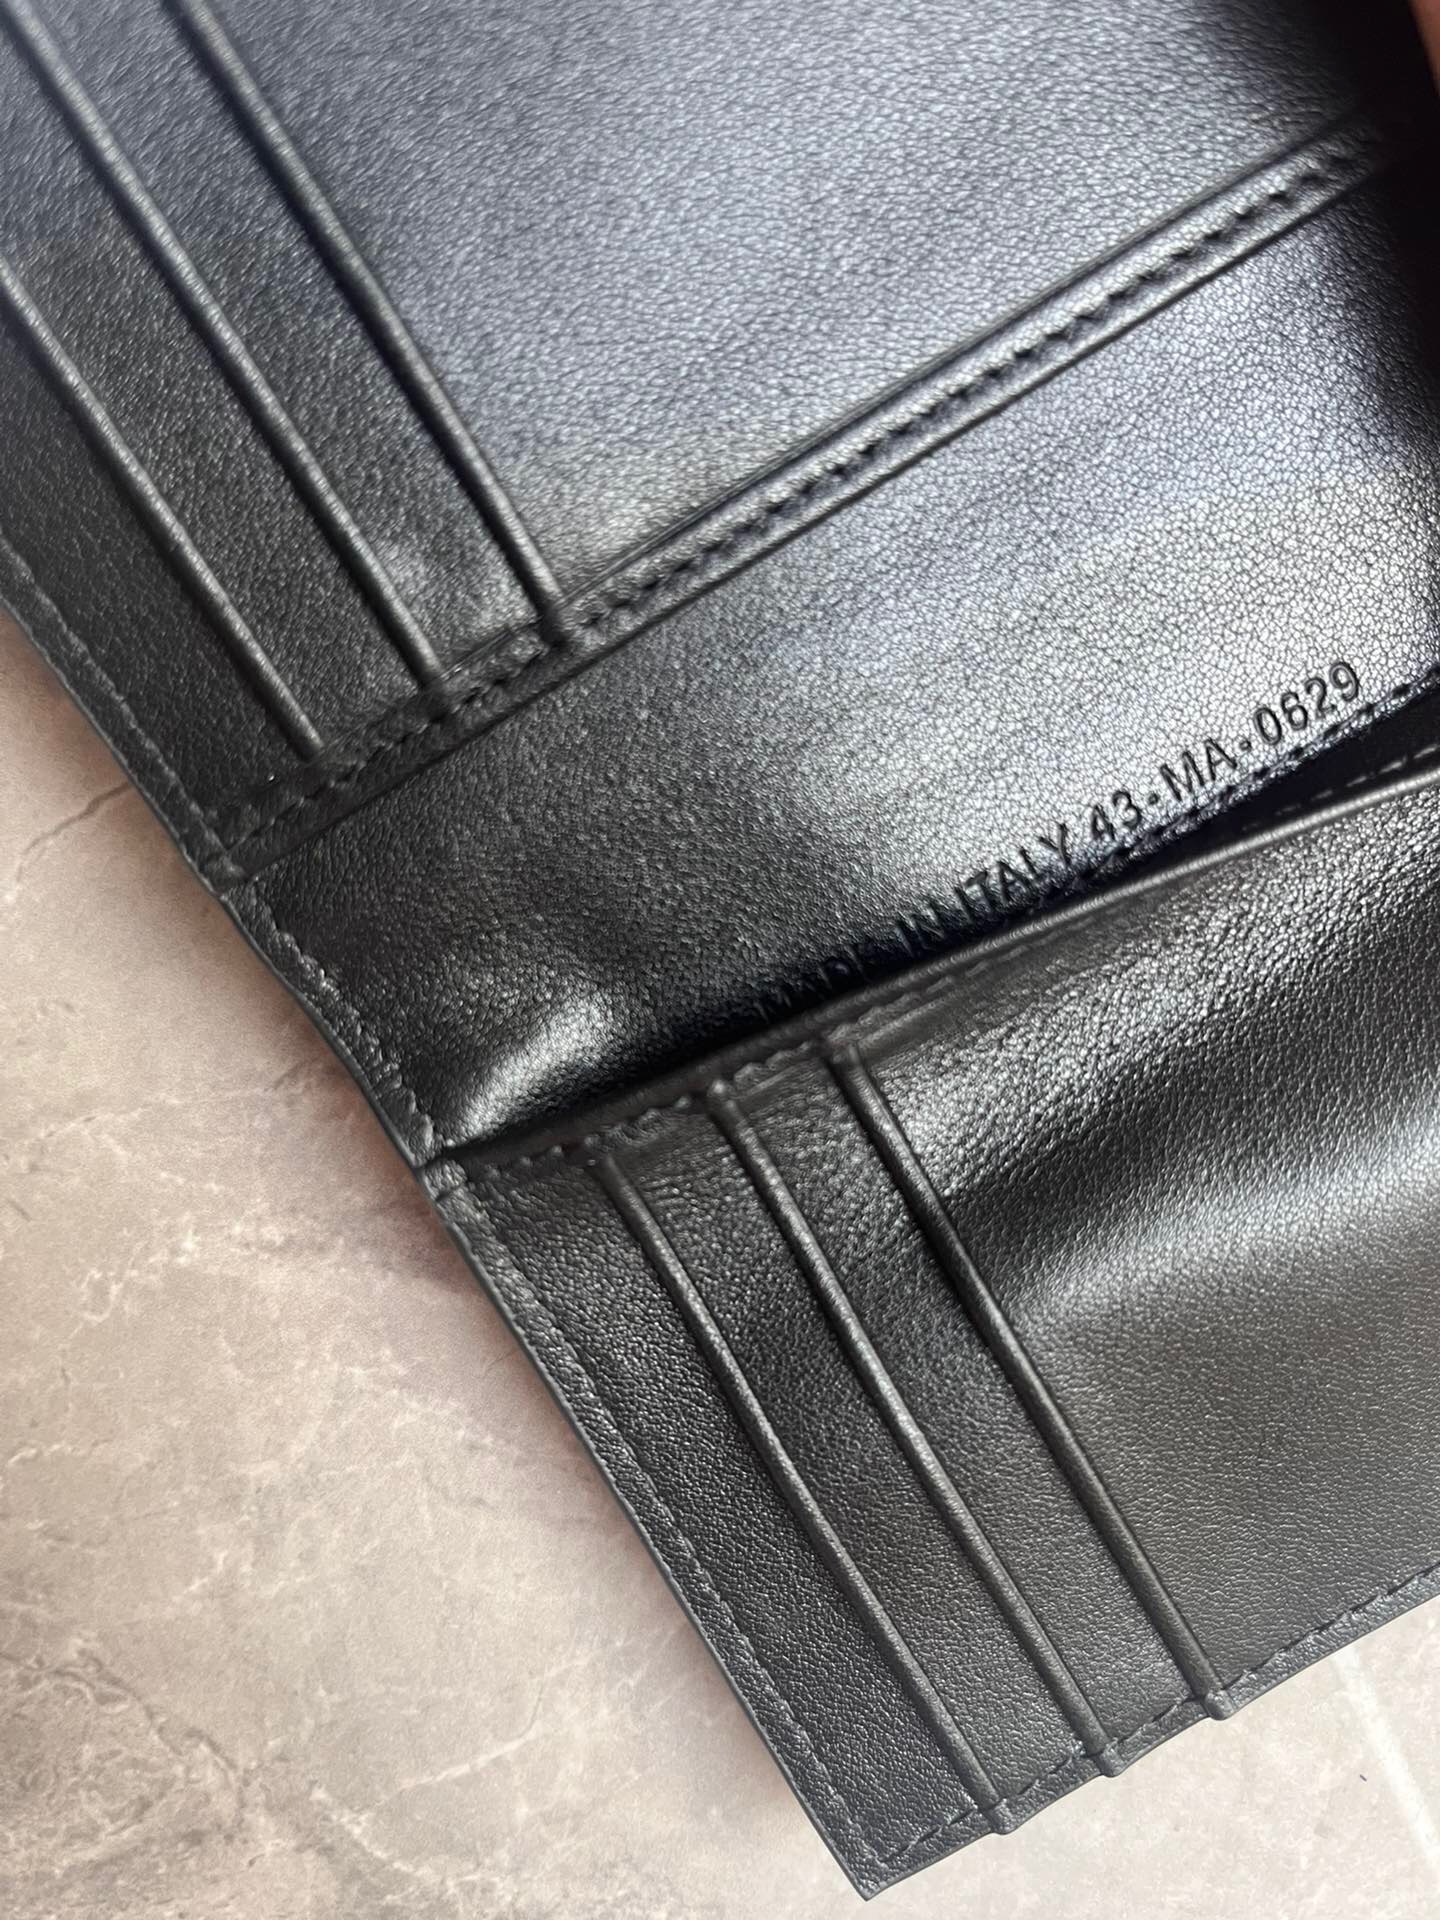 Dior男士新款雙摺卡夾 採用黑色光滑牛皮革精心制作高仿a貨